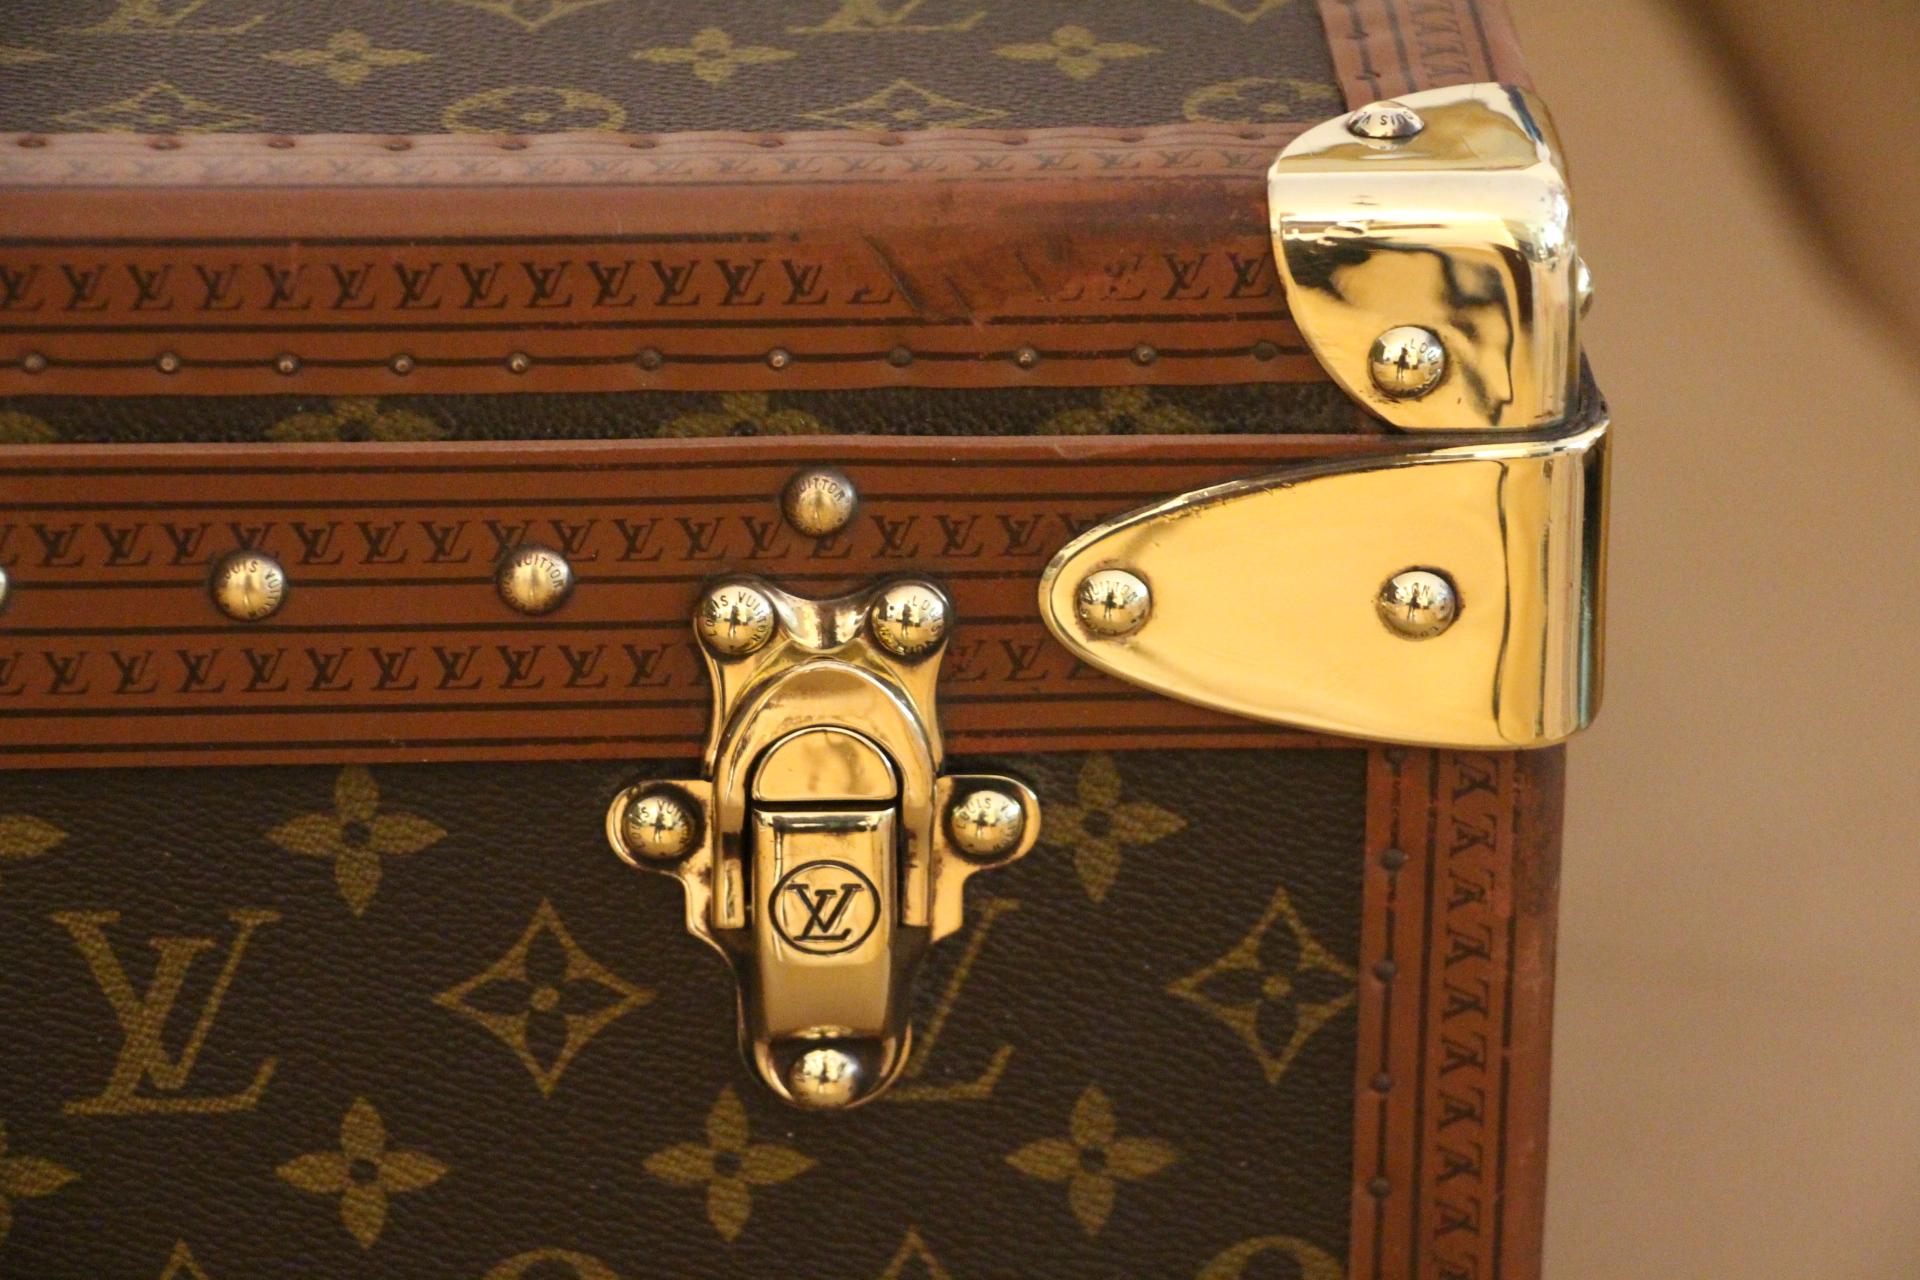  Louis Vuitton Suitcase, Alzer 70 Louis Vuitton Suitcase, Large Vuitton Suitcase 2